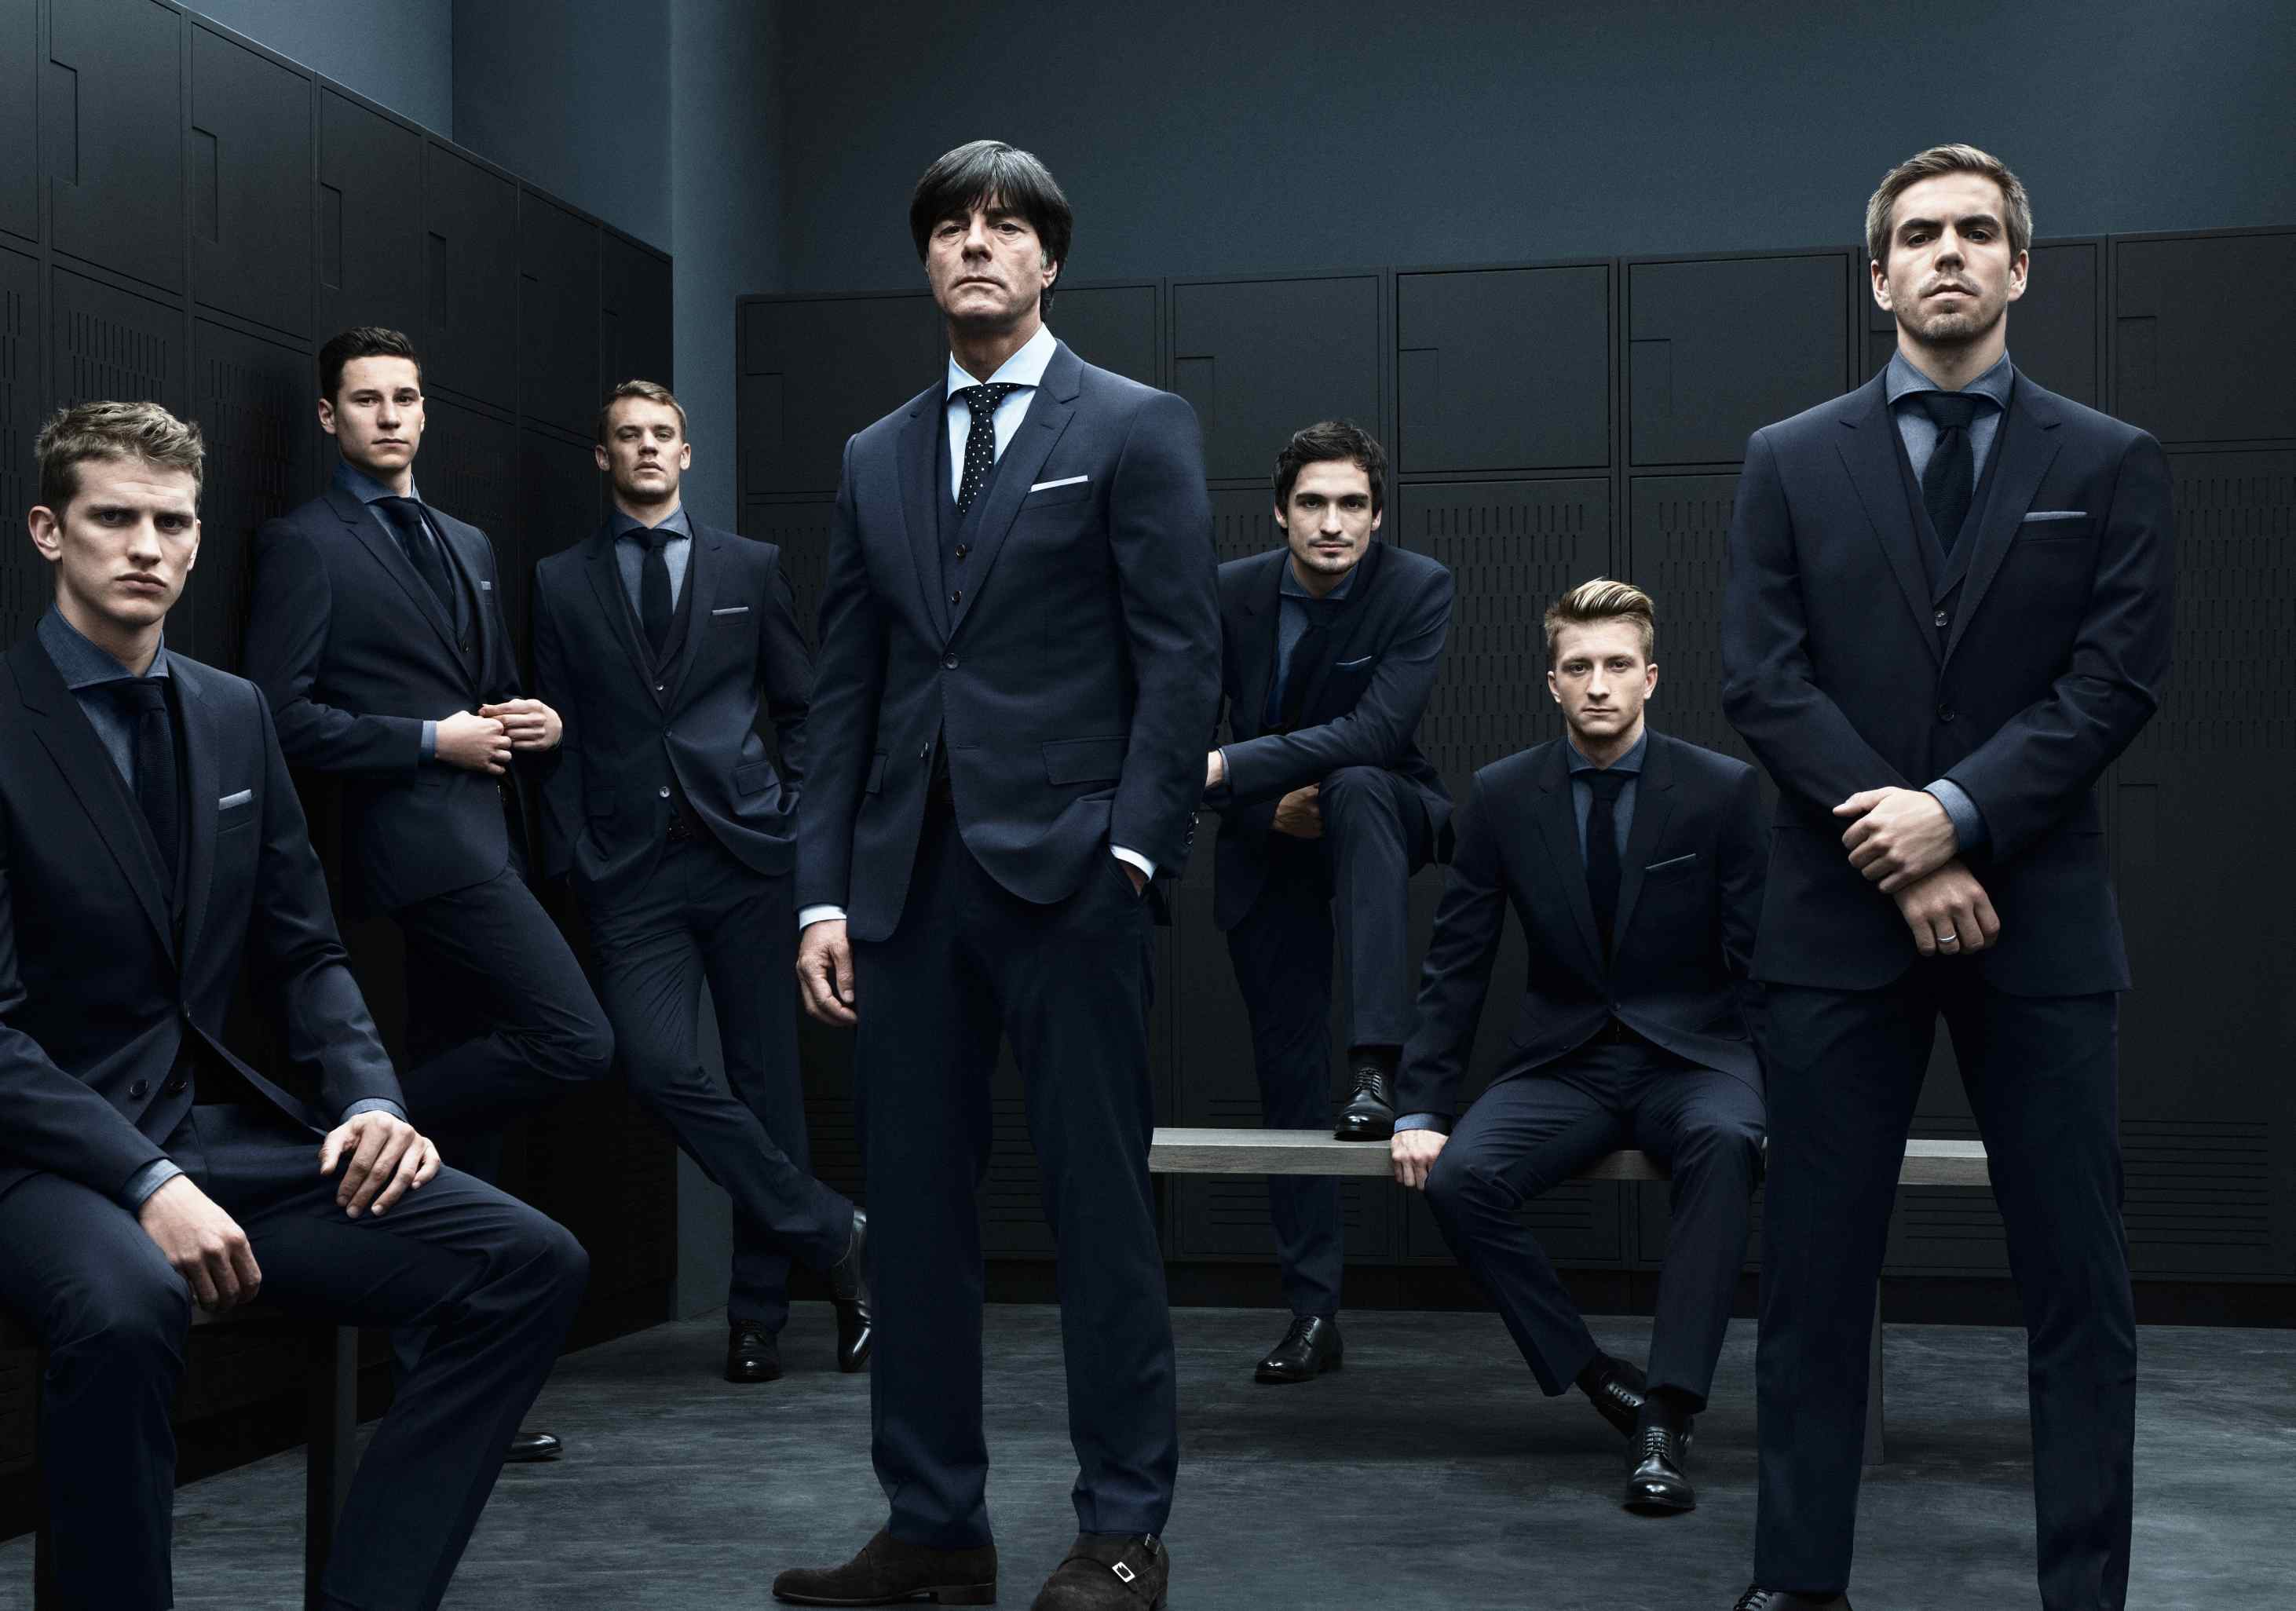 Про 5 мужчин. Сборная Германии по футболу Hugo Boss. Сборная Германии по футболу в костюмах Hugo Boss. Несколько мужчин в костюмах. Пять мужчин в костюмах.